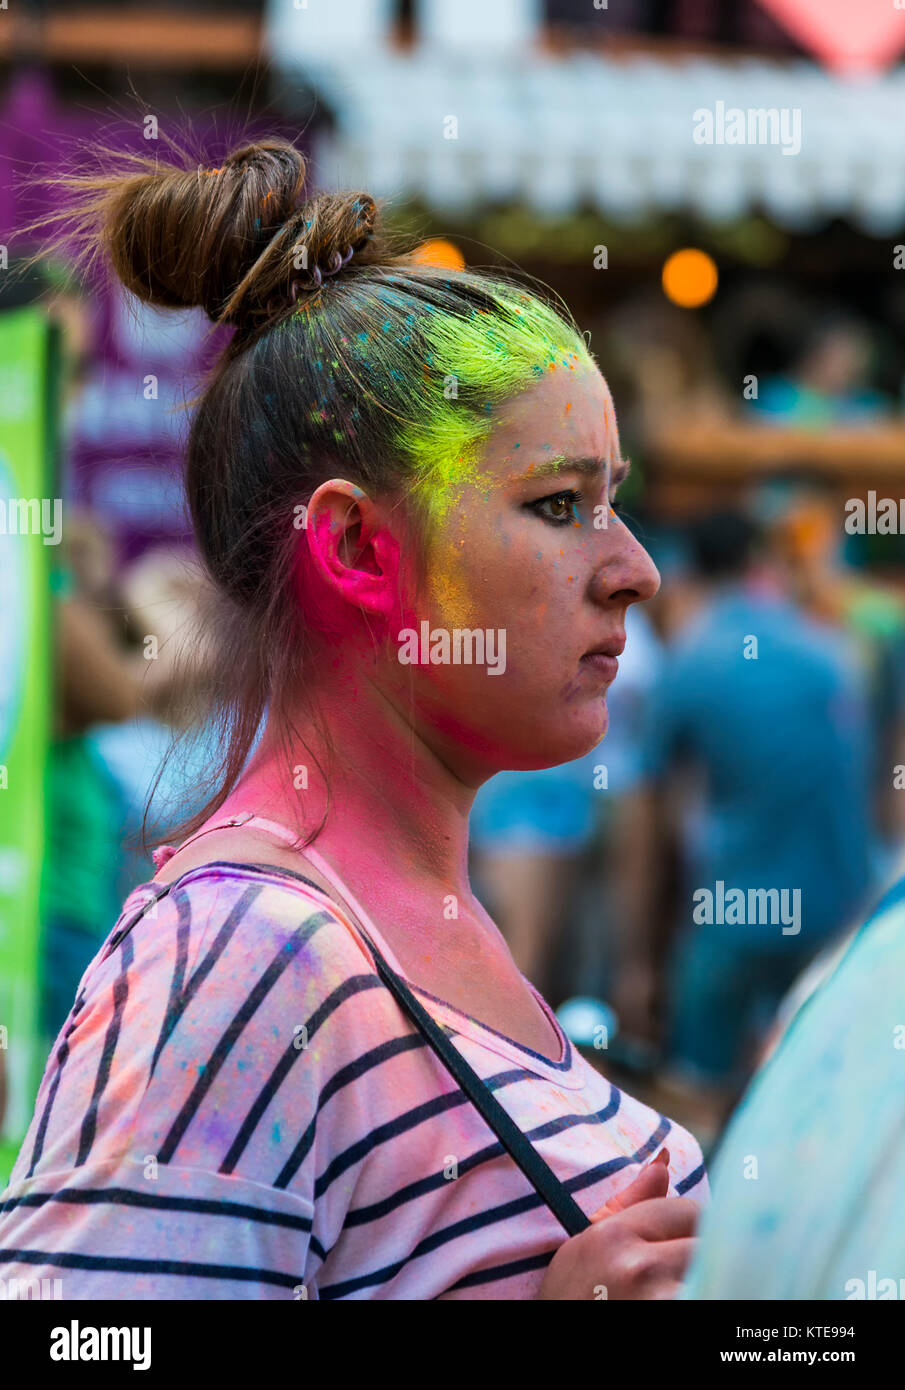 Lviv, Ucraina - 30 agosto 2015: Ragazza guarda la festa di colori in un parco della città di Leopoli. Foto Stock